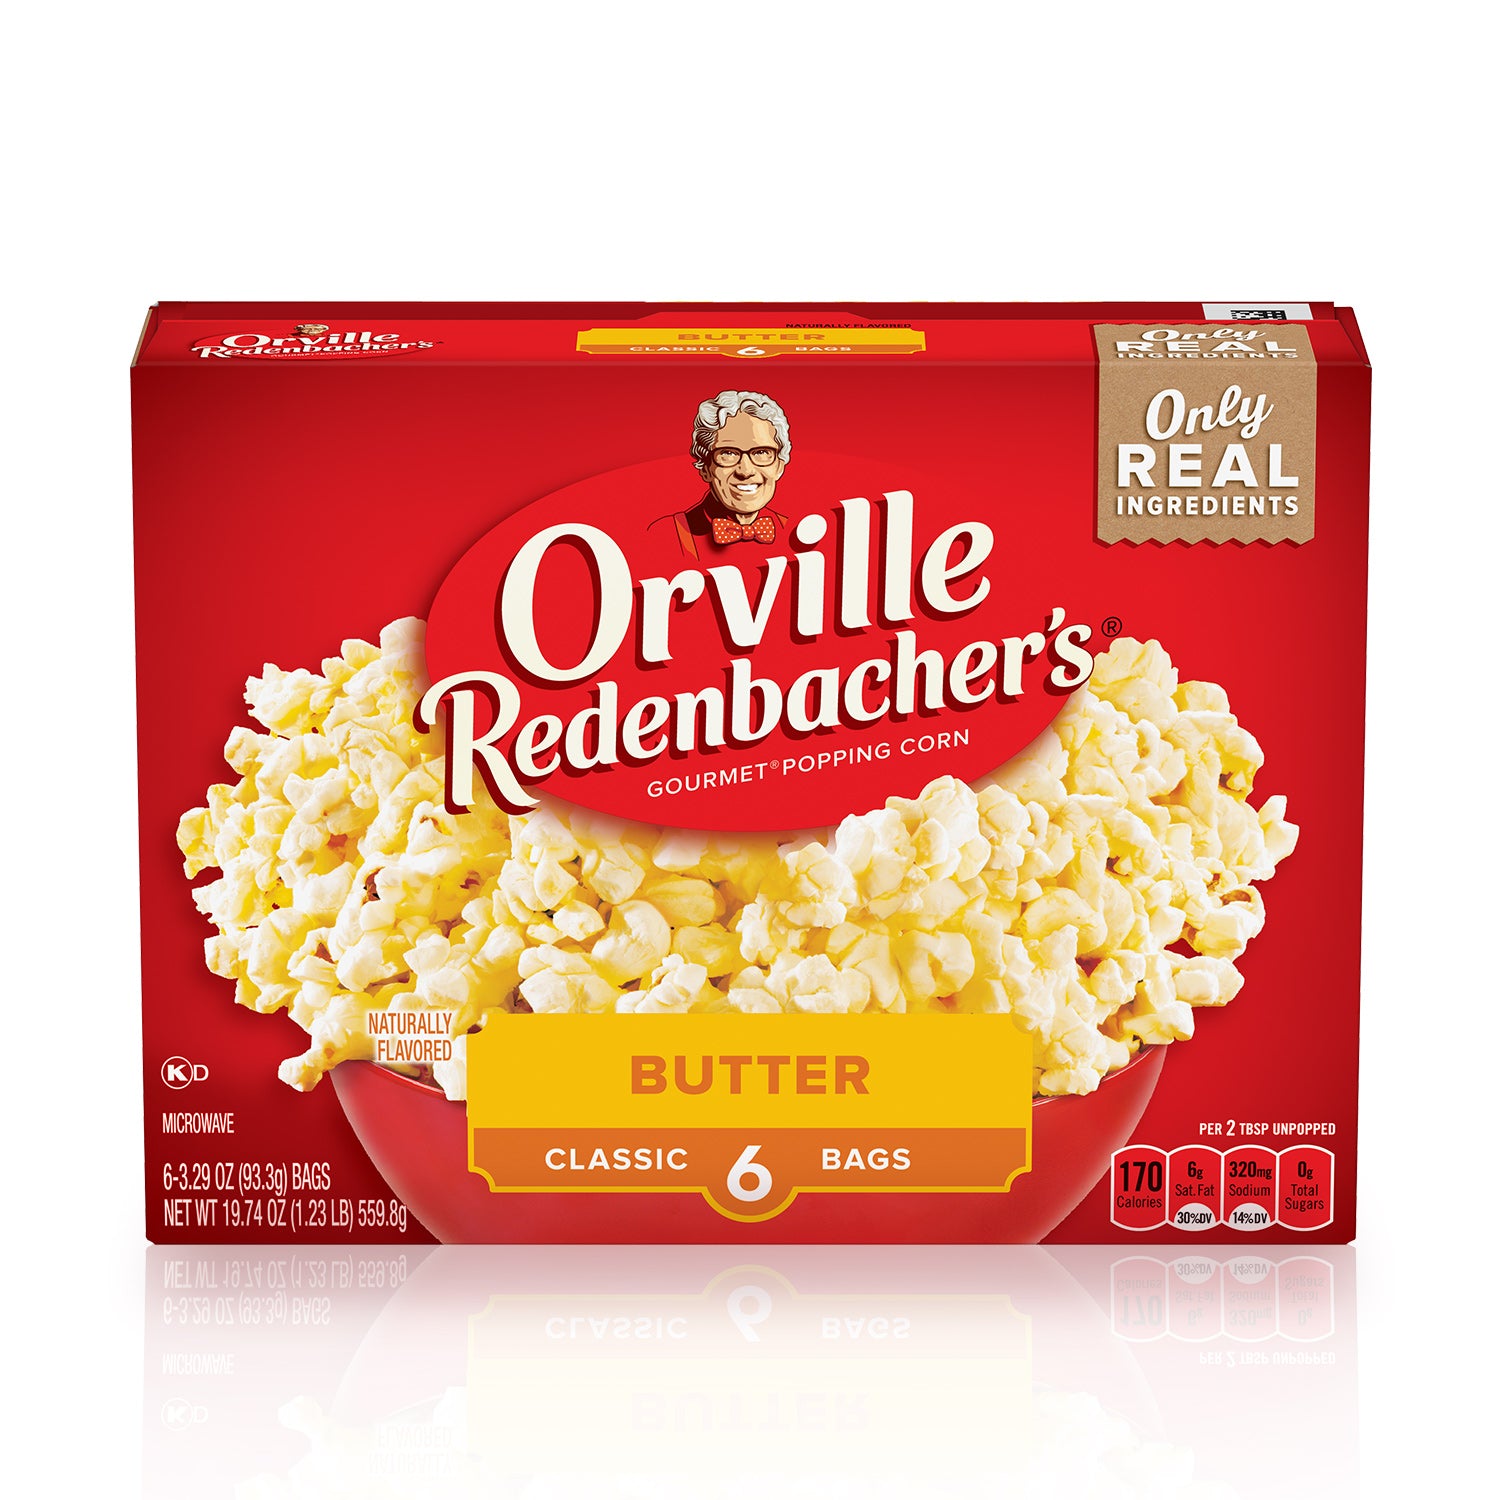 Orville Redenbacher's Butter Gourmet Popping Corn, 6 count